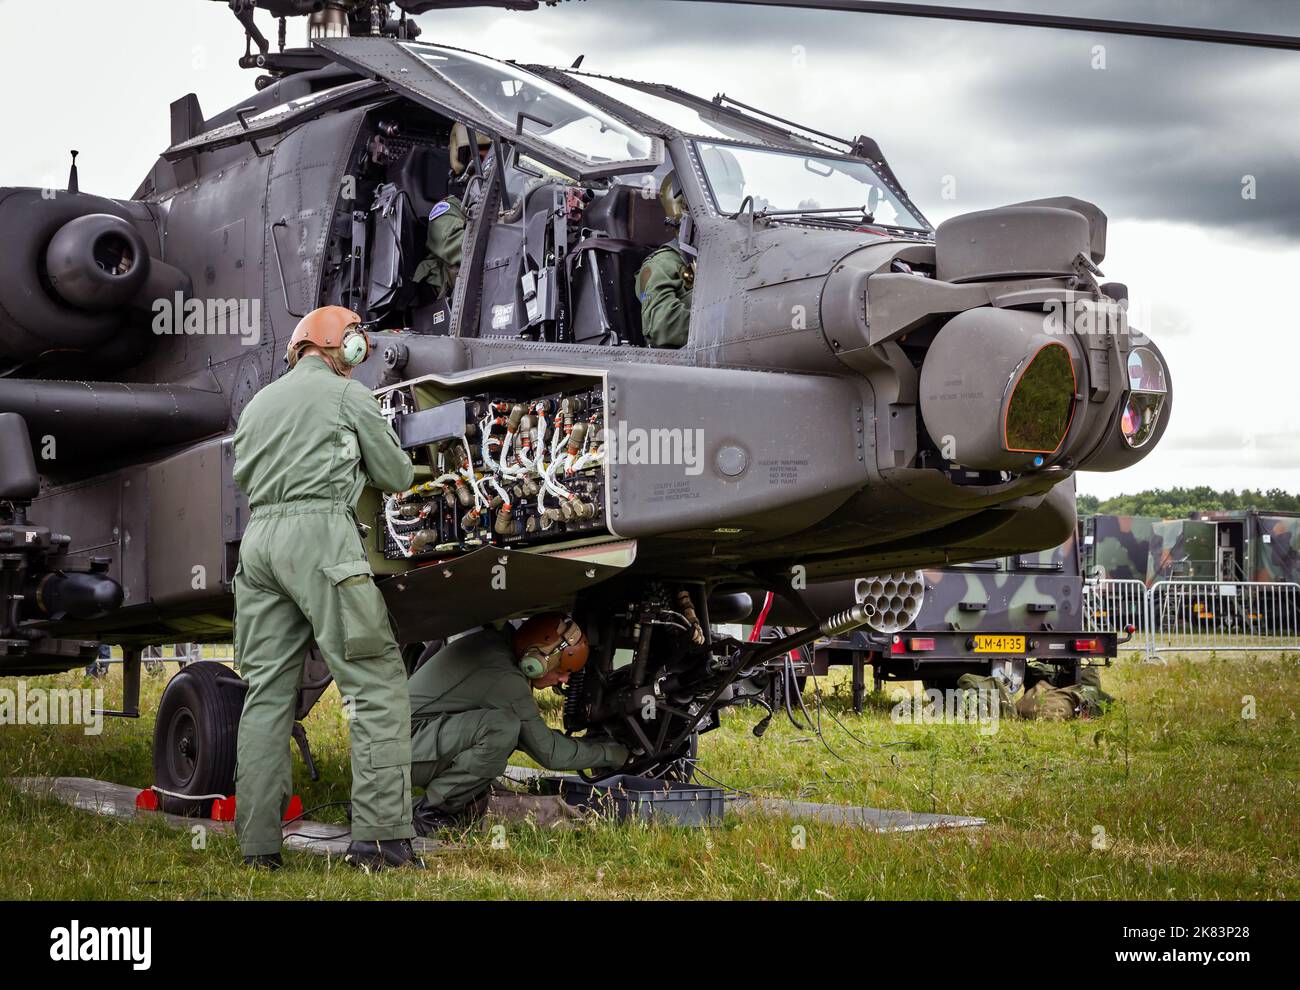 Helicópteros Boeing AH-64 Appache de ataque en la Base Aérea Gilze-Rijen, Países Bajos - 20 de junio de 2014 Foto de stock